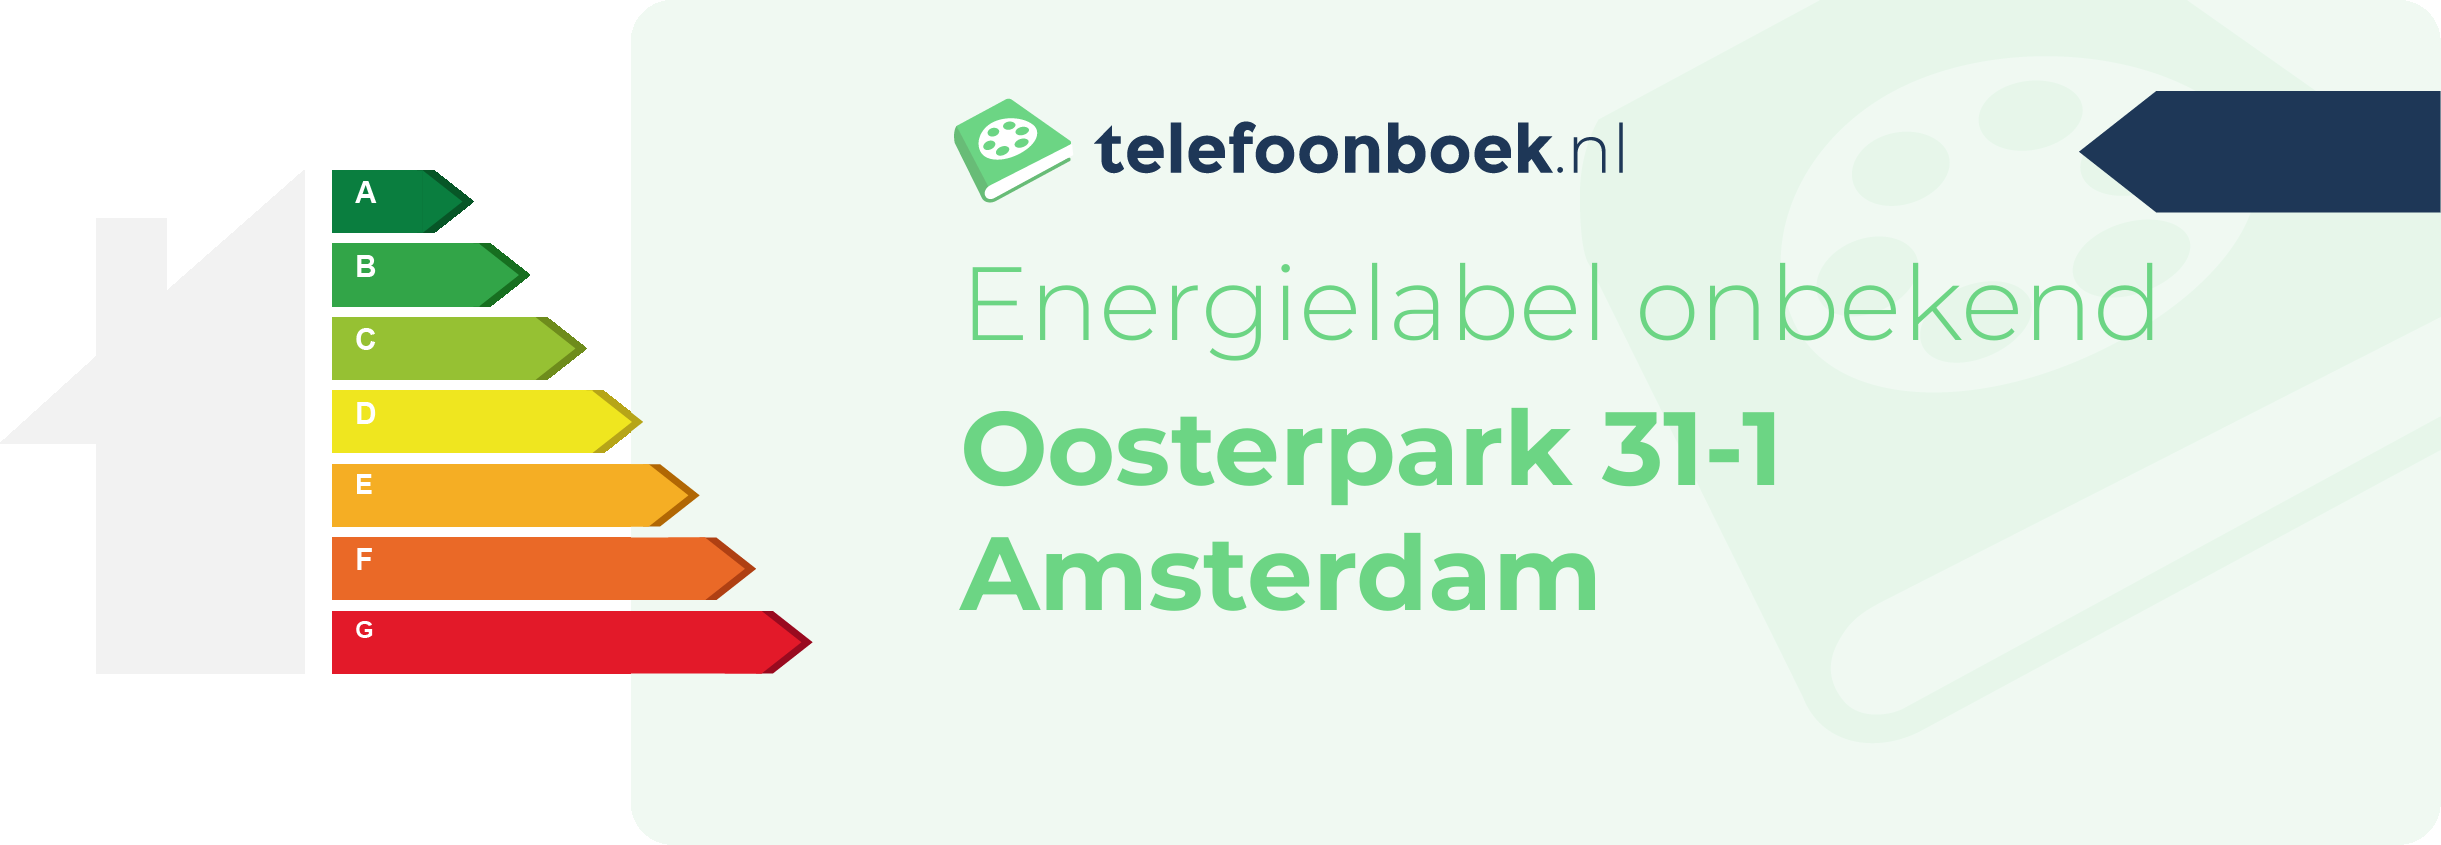 Energielabel Oosterpark 31-1 Amsterdam